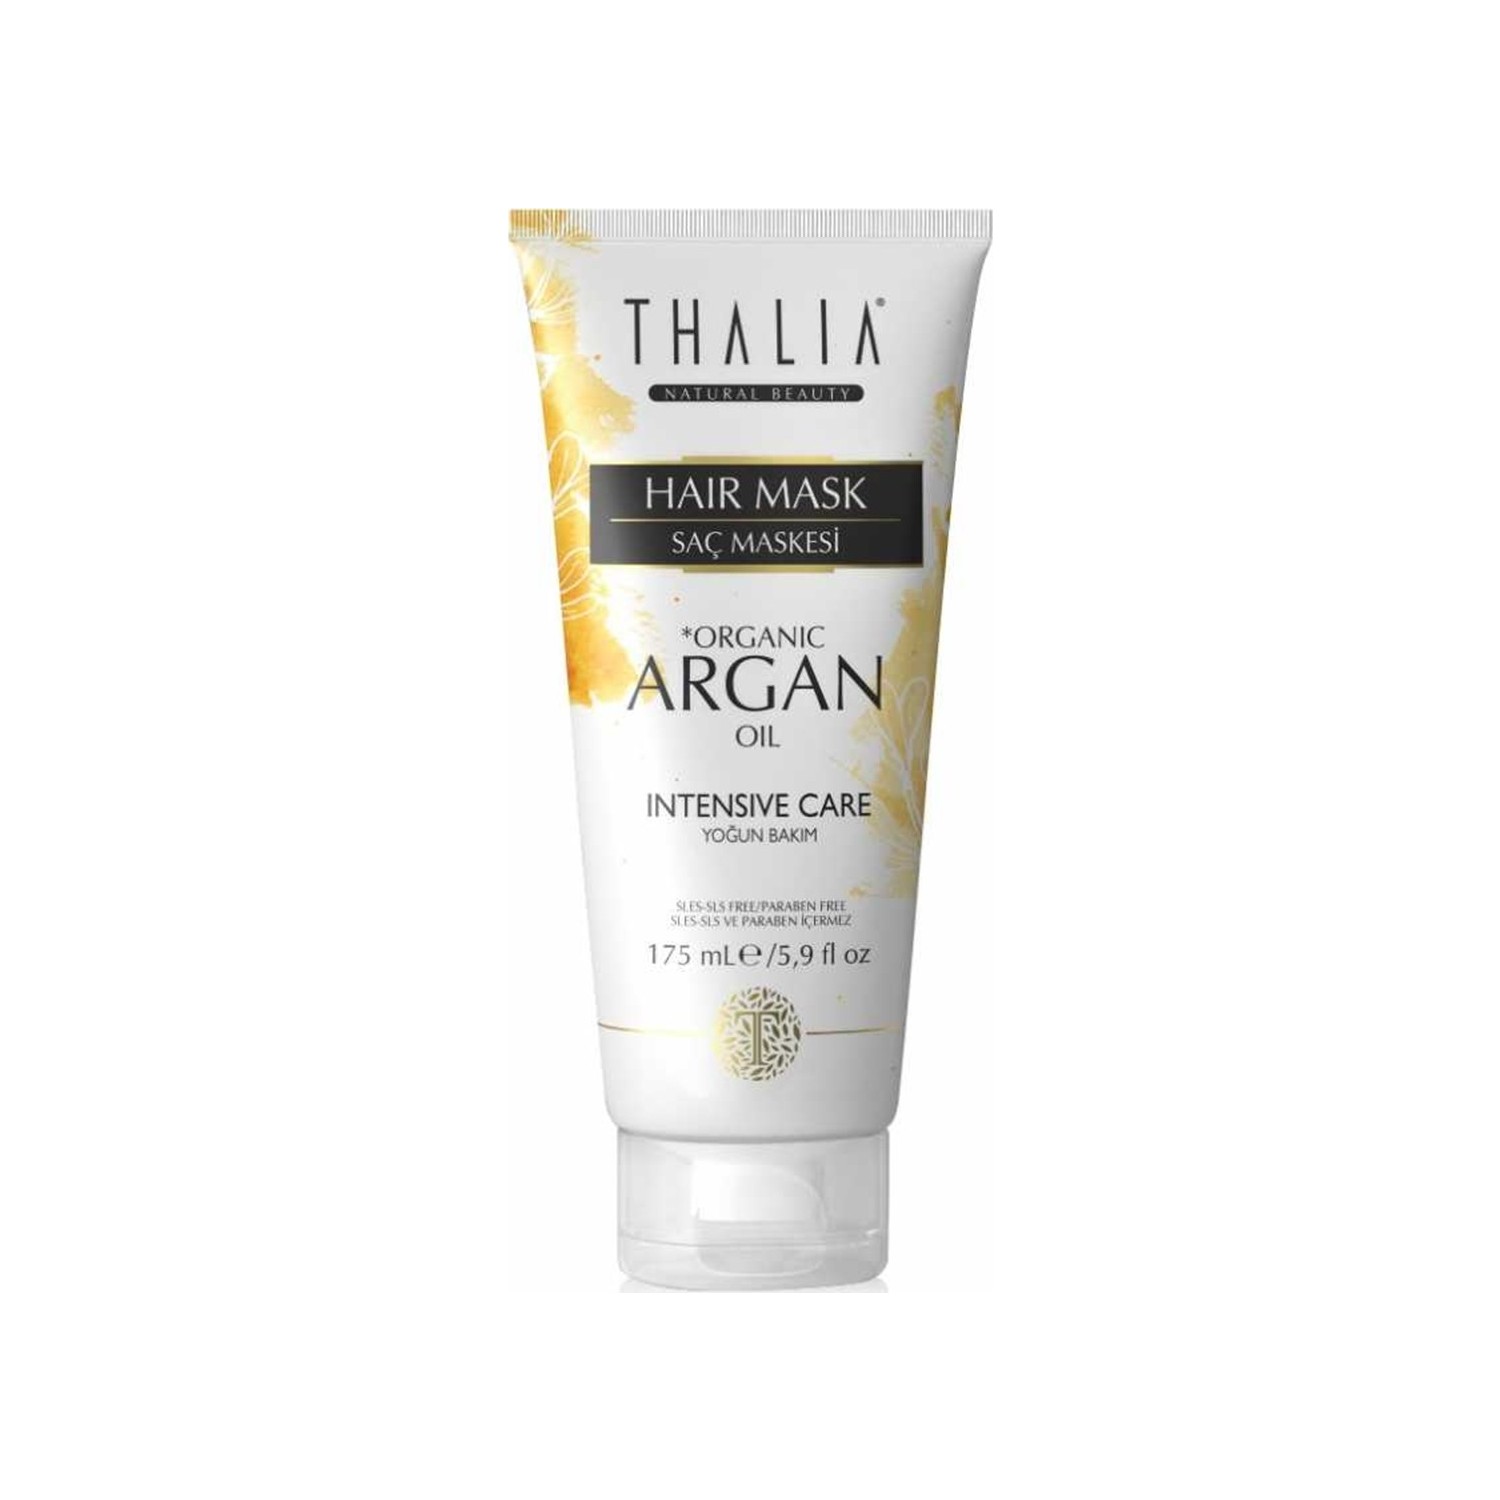 Маска для ухода за волосами Thalia с органическим аргановым маслом, 175 мл увлажняющая маска для ухода за волосами thalia с оливковым маслом 175 мл